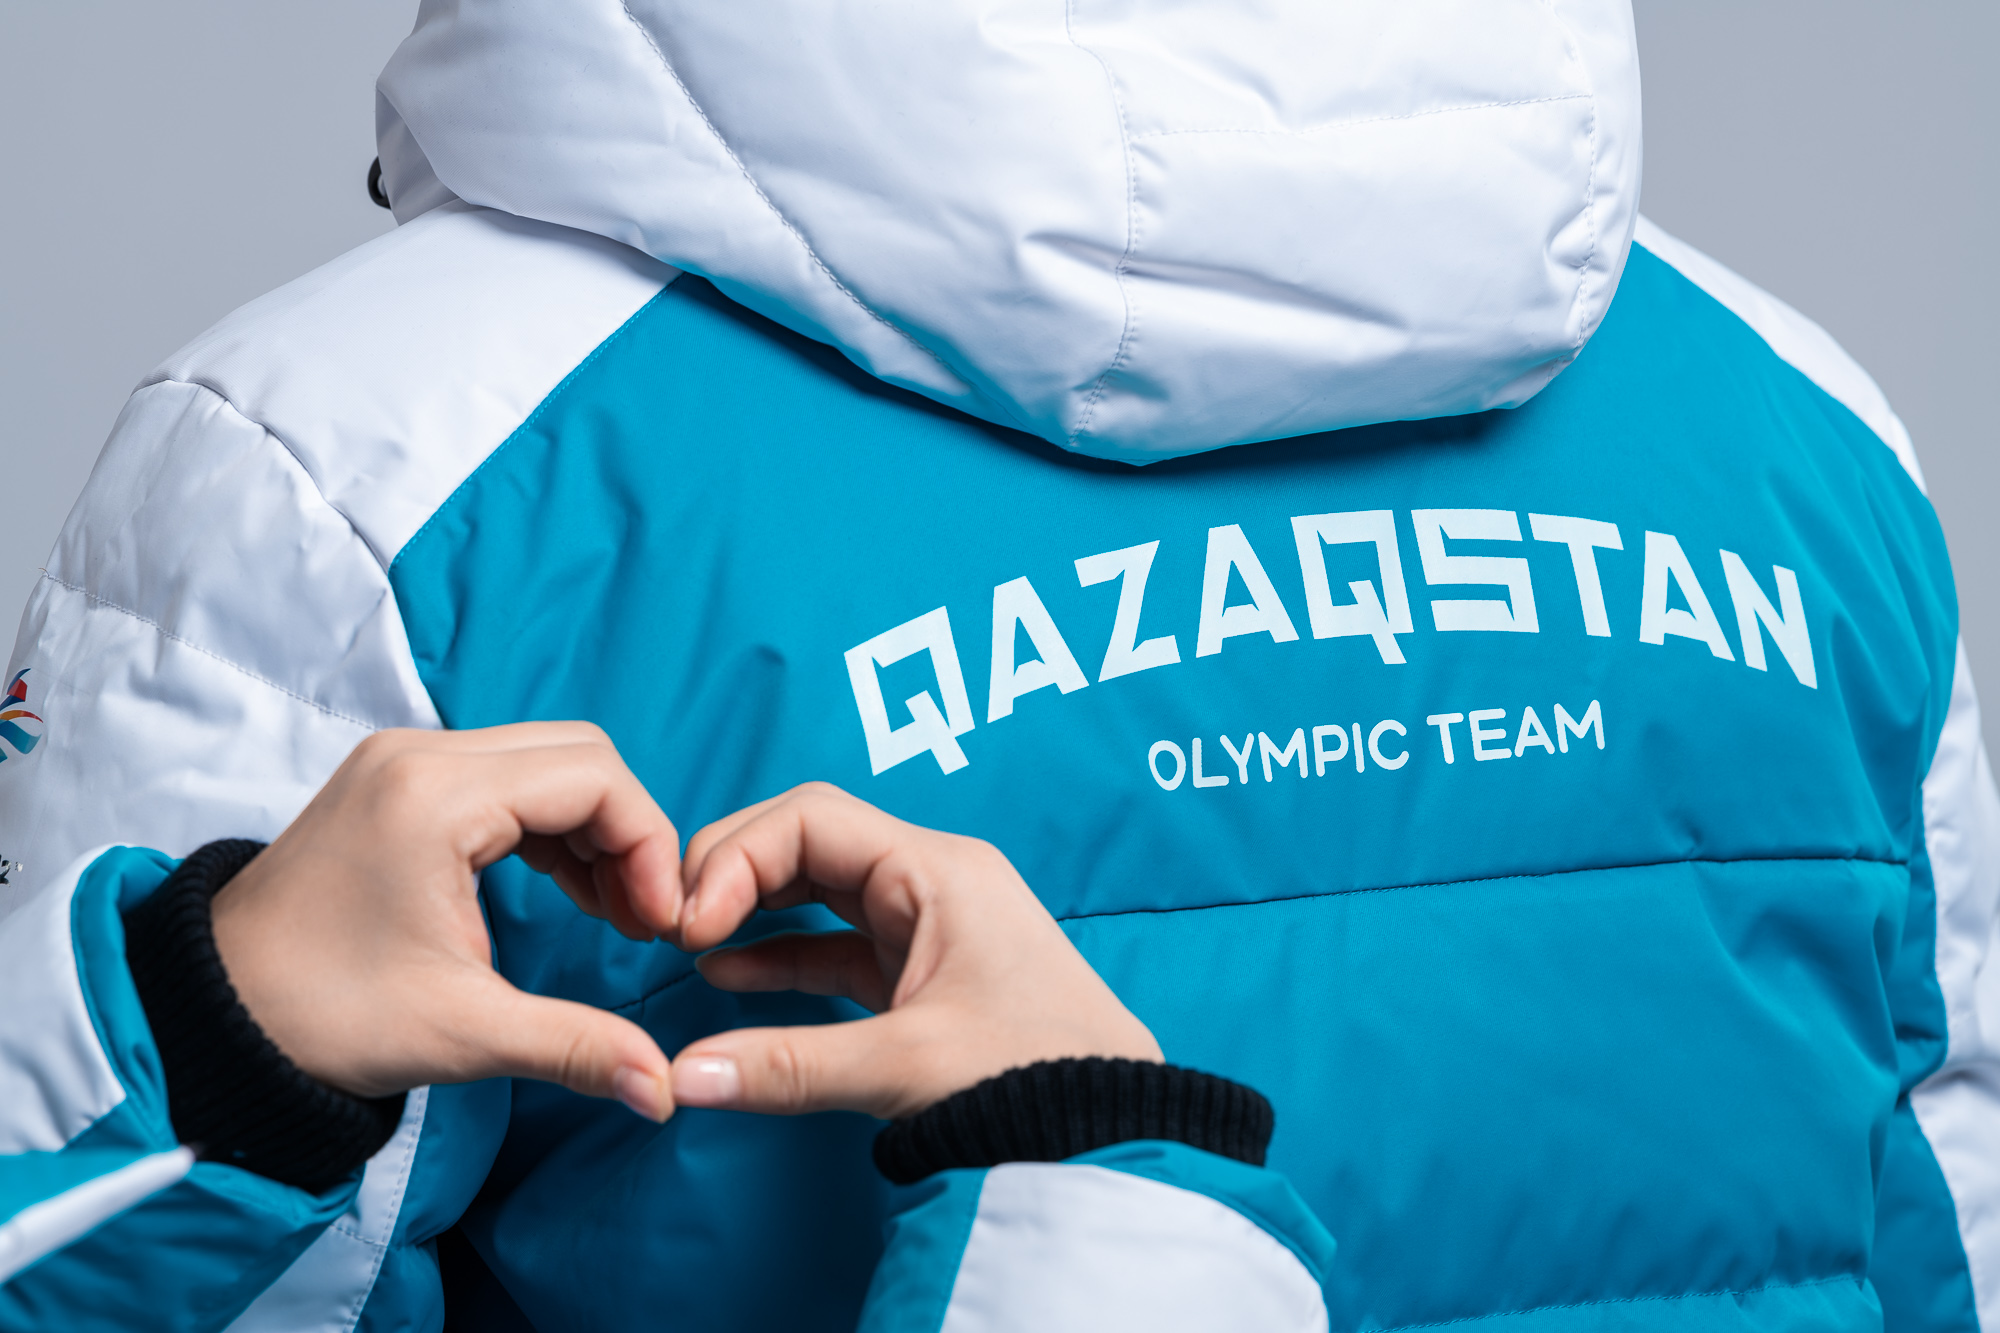 Российский дизайнер создал олимпийскую форму для сборной Казахстана